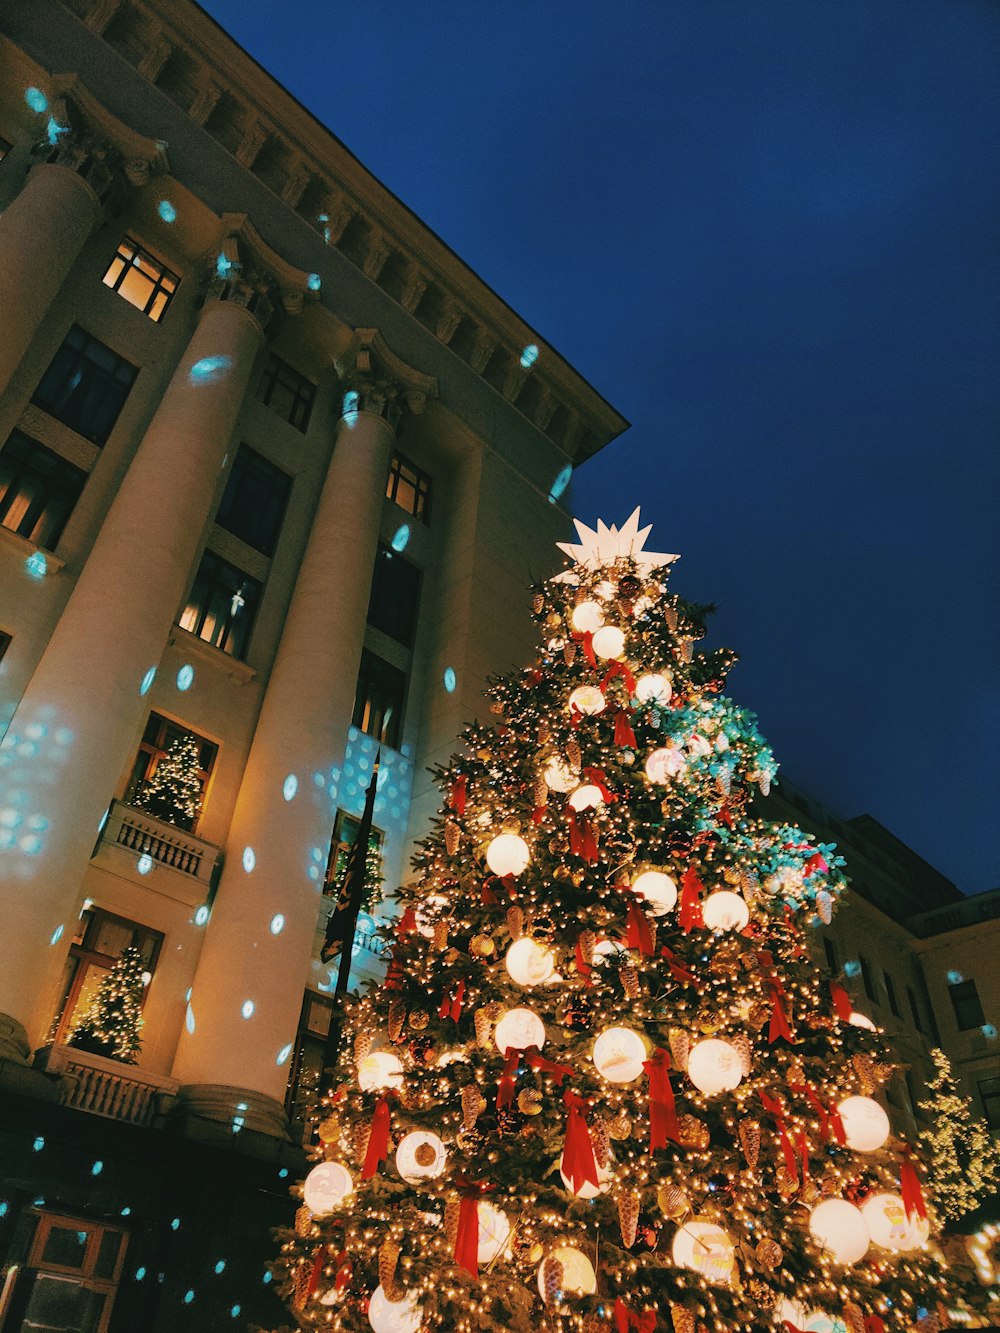 Arbre de Noël avec guirlandes lumineuses près d’un bâtiment en béton brun pendant la nuit